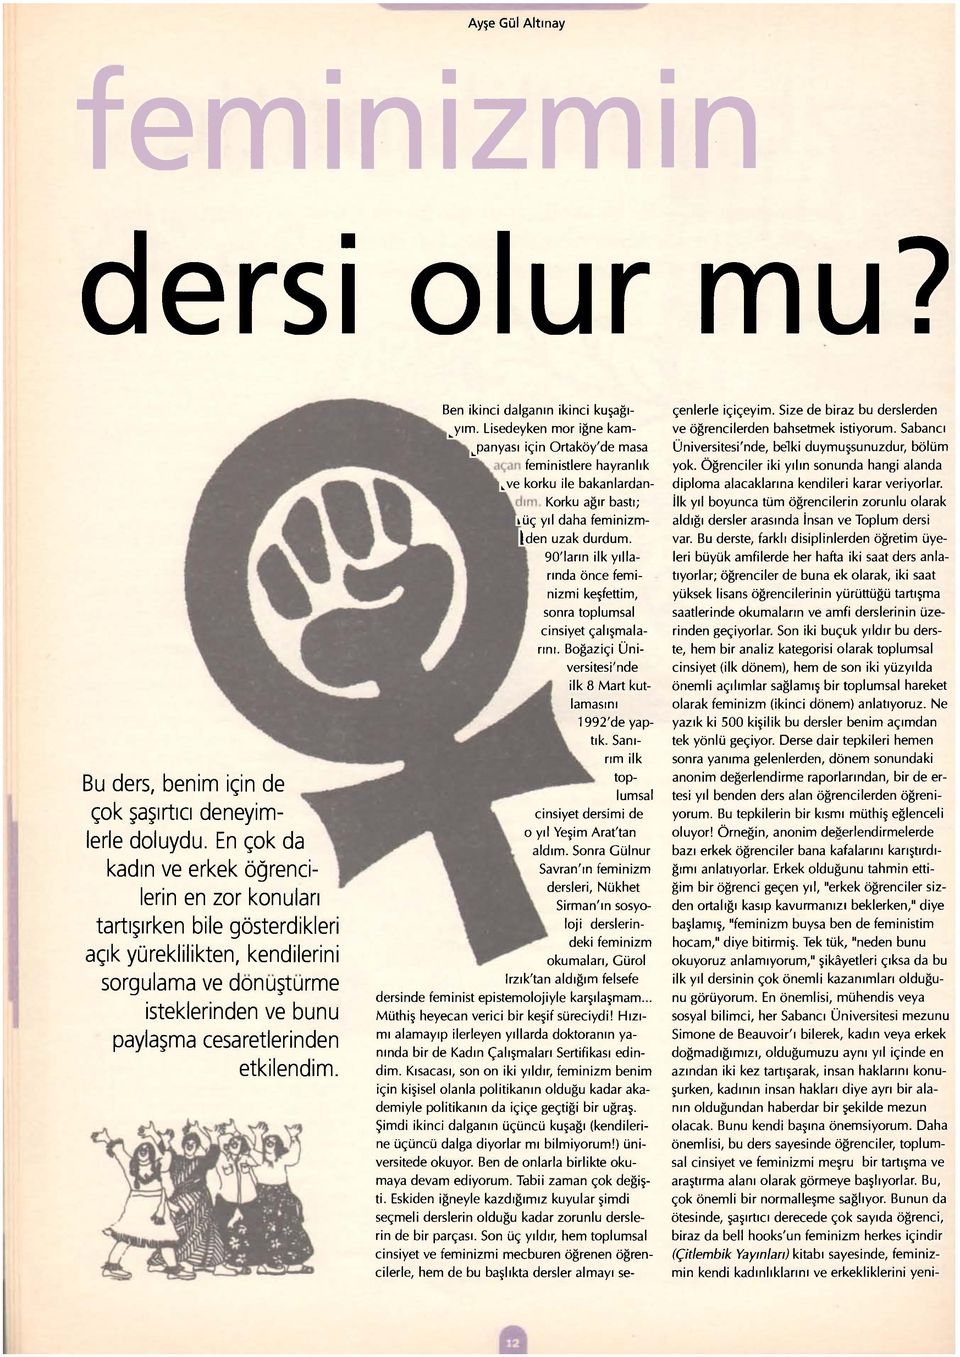 Ben ikinci dalganın ikinci kuşağınım. Lisedeyken mor iğne kampanyası için Ortaköy'de masa feministlere hayranlık kve korku ile bakanlardan- Korku ağır bastı; küç yıl daha feminizm- den uzak durdum.